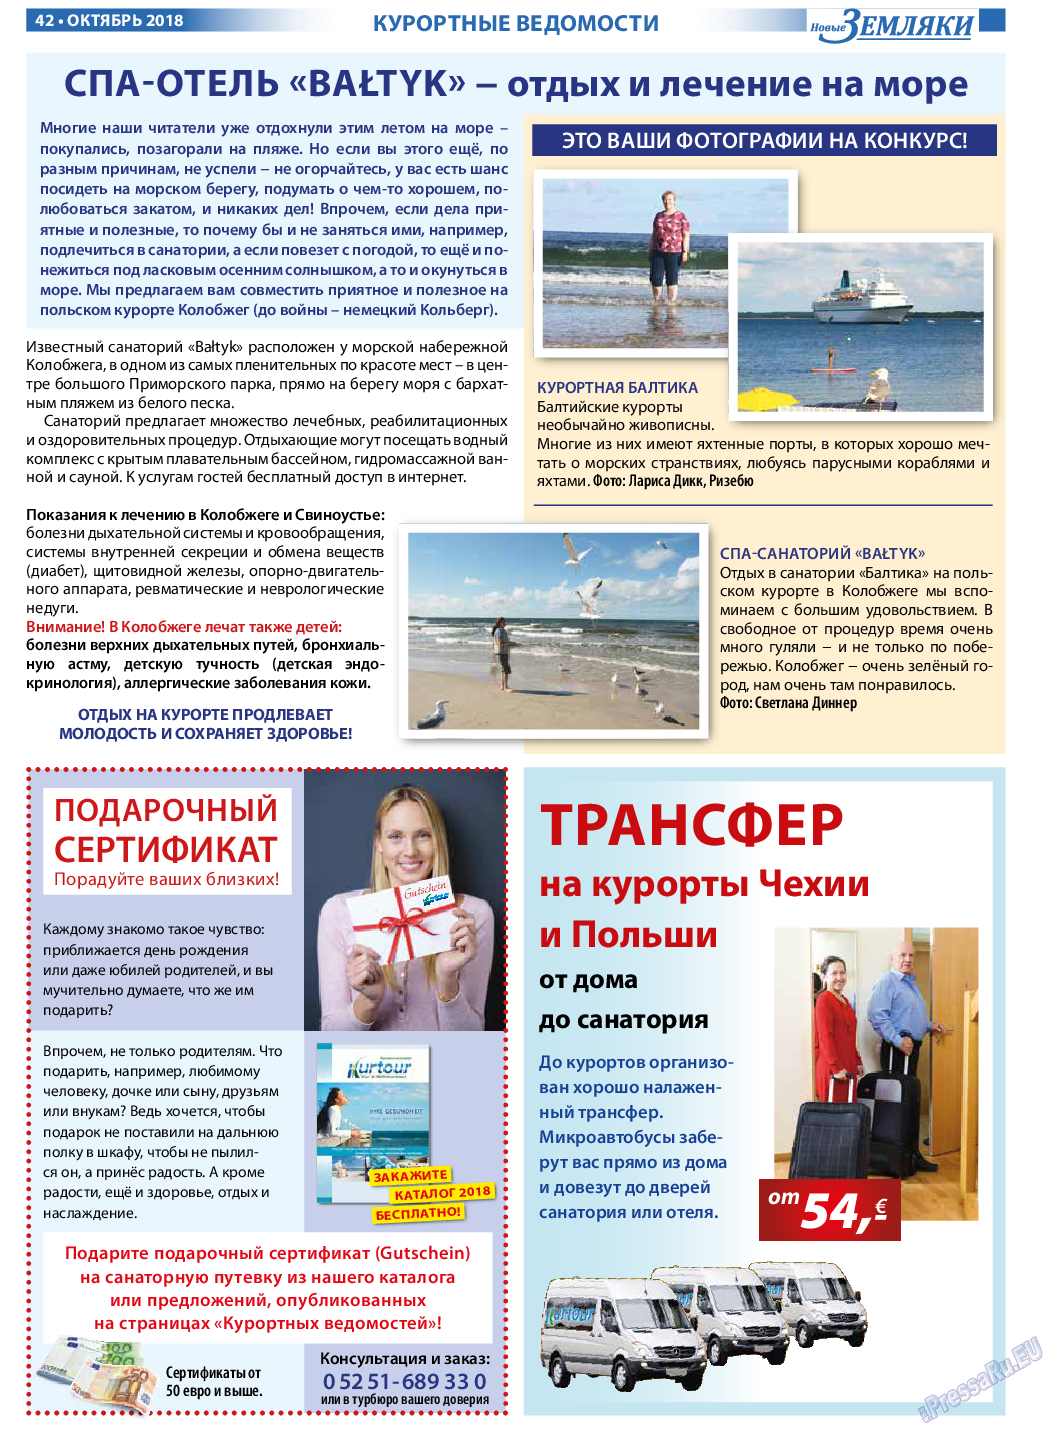 Новые Земляки, газета. 2018 №10 стр.42